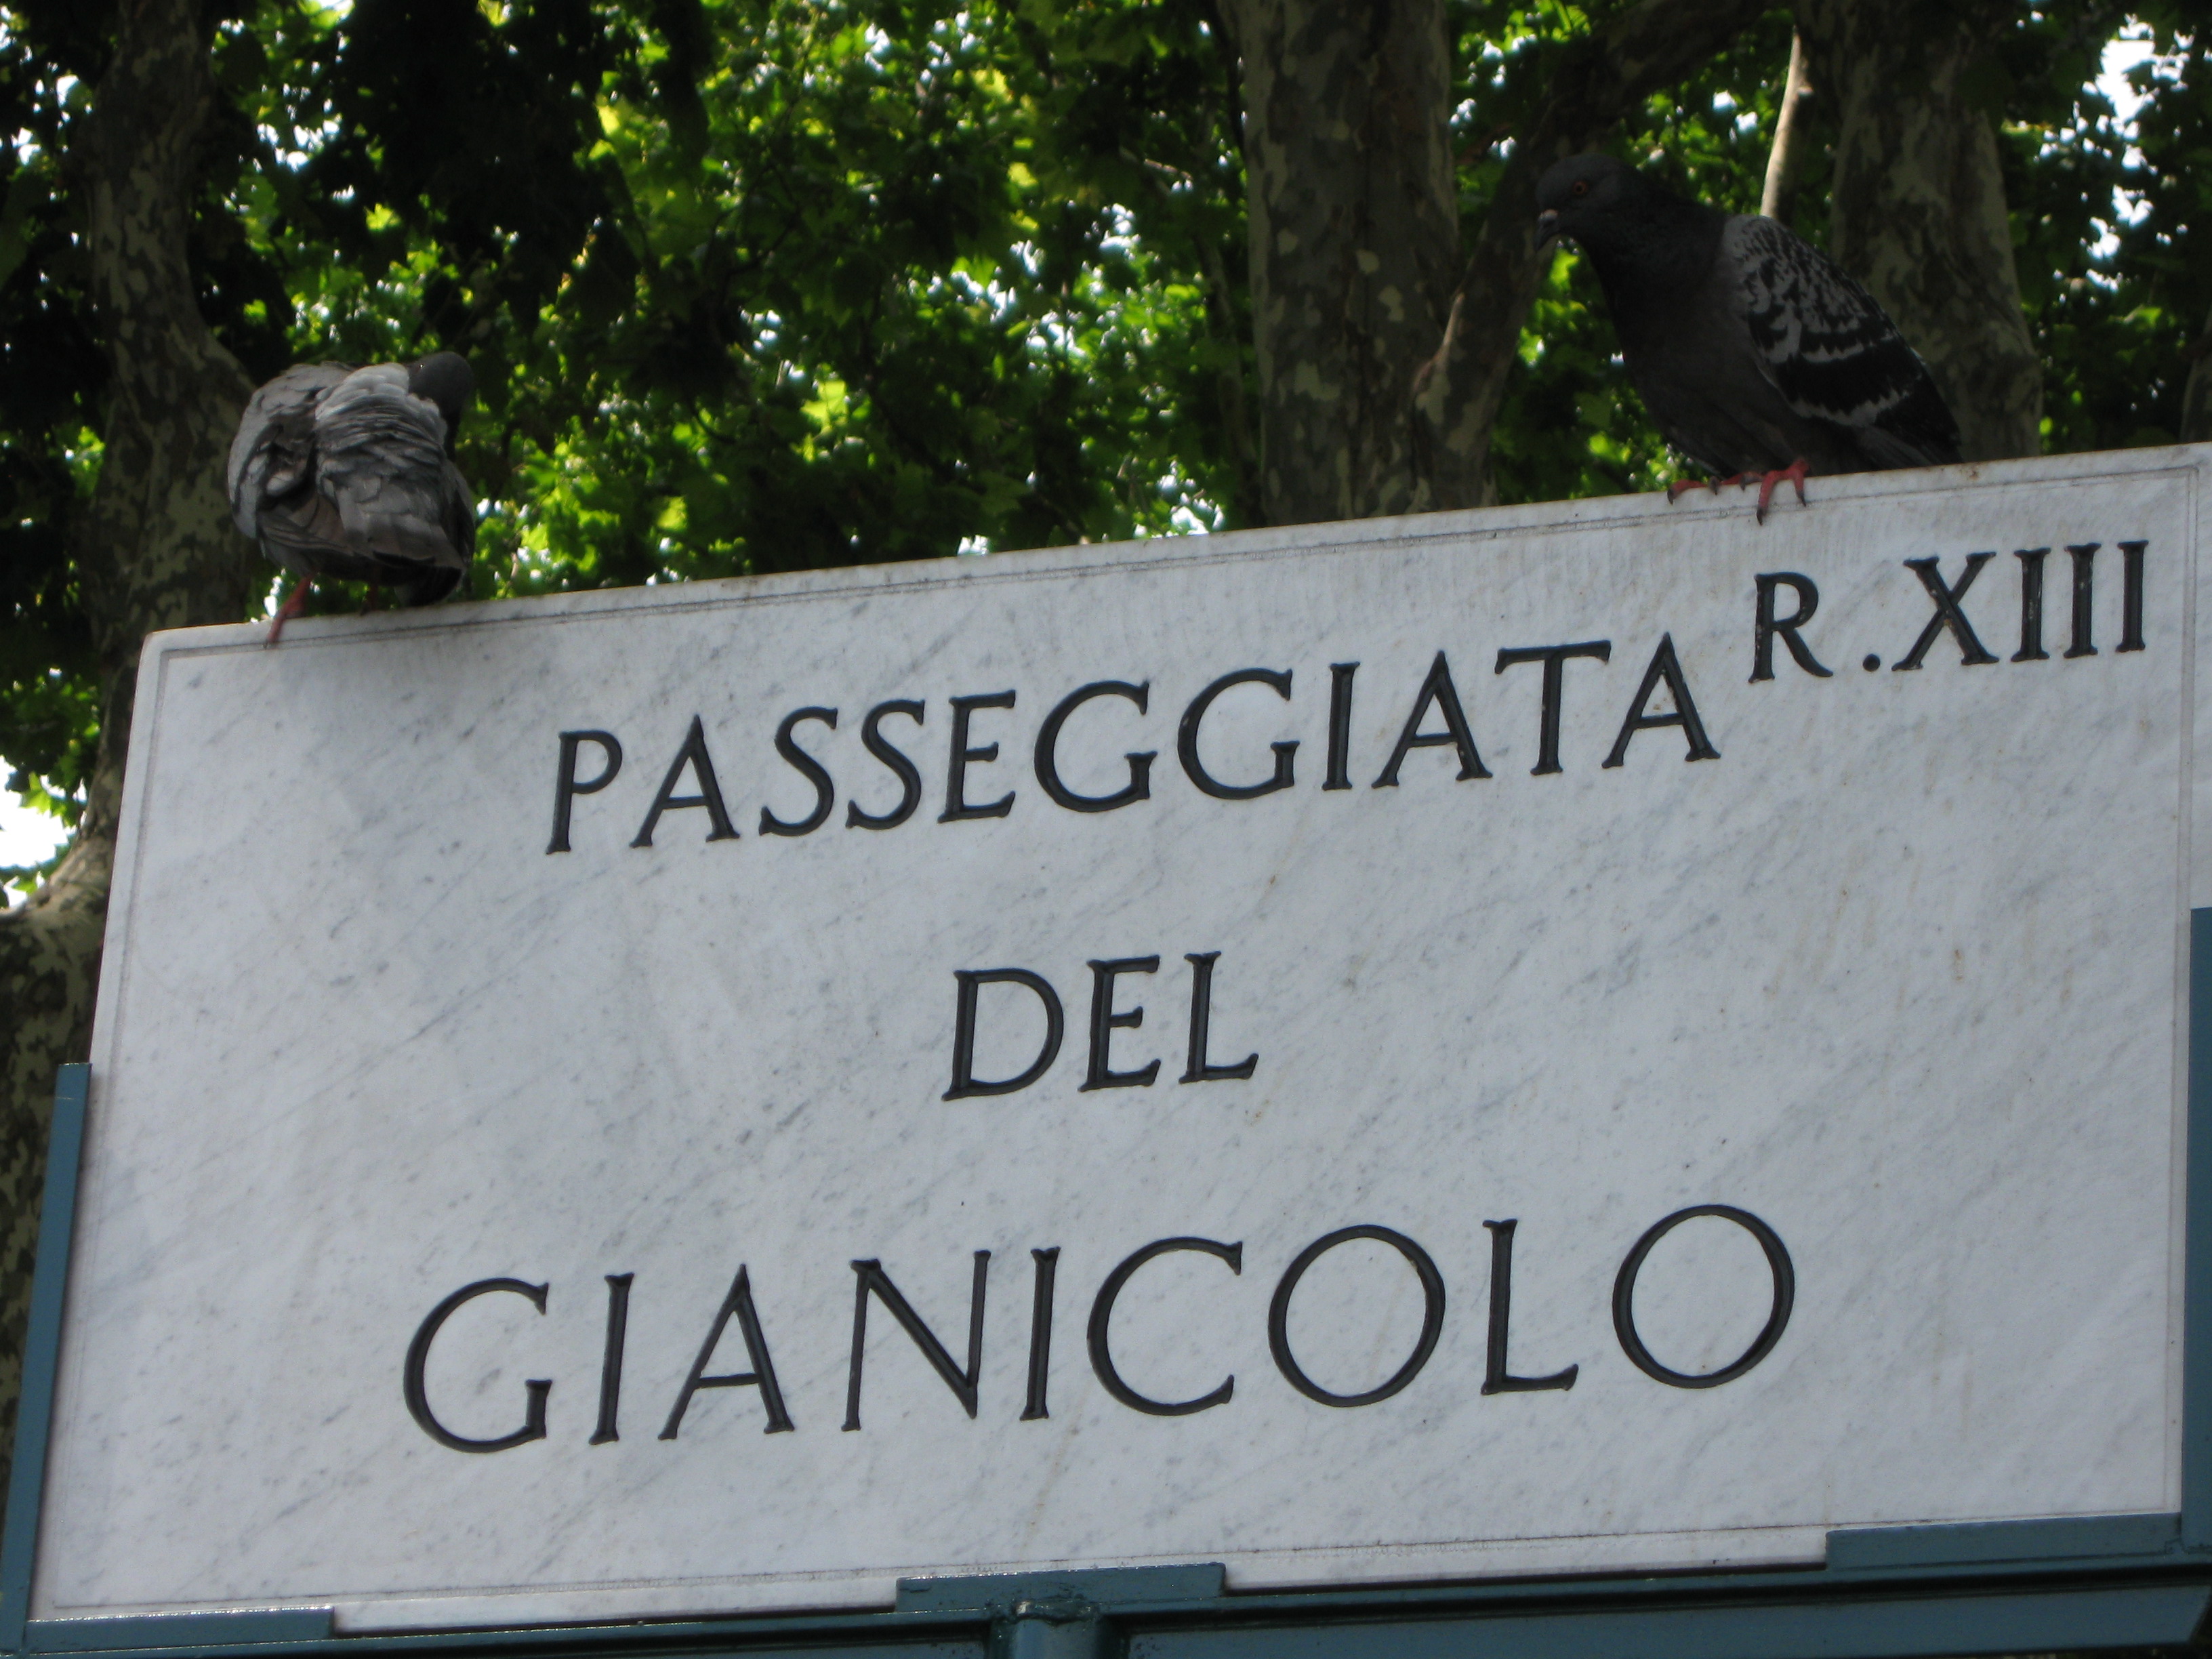 Passeggiata del Gianicolo, Rome, Italy